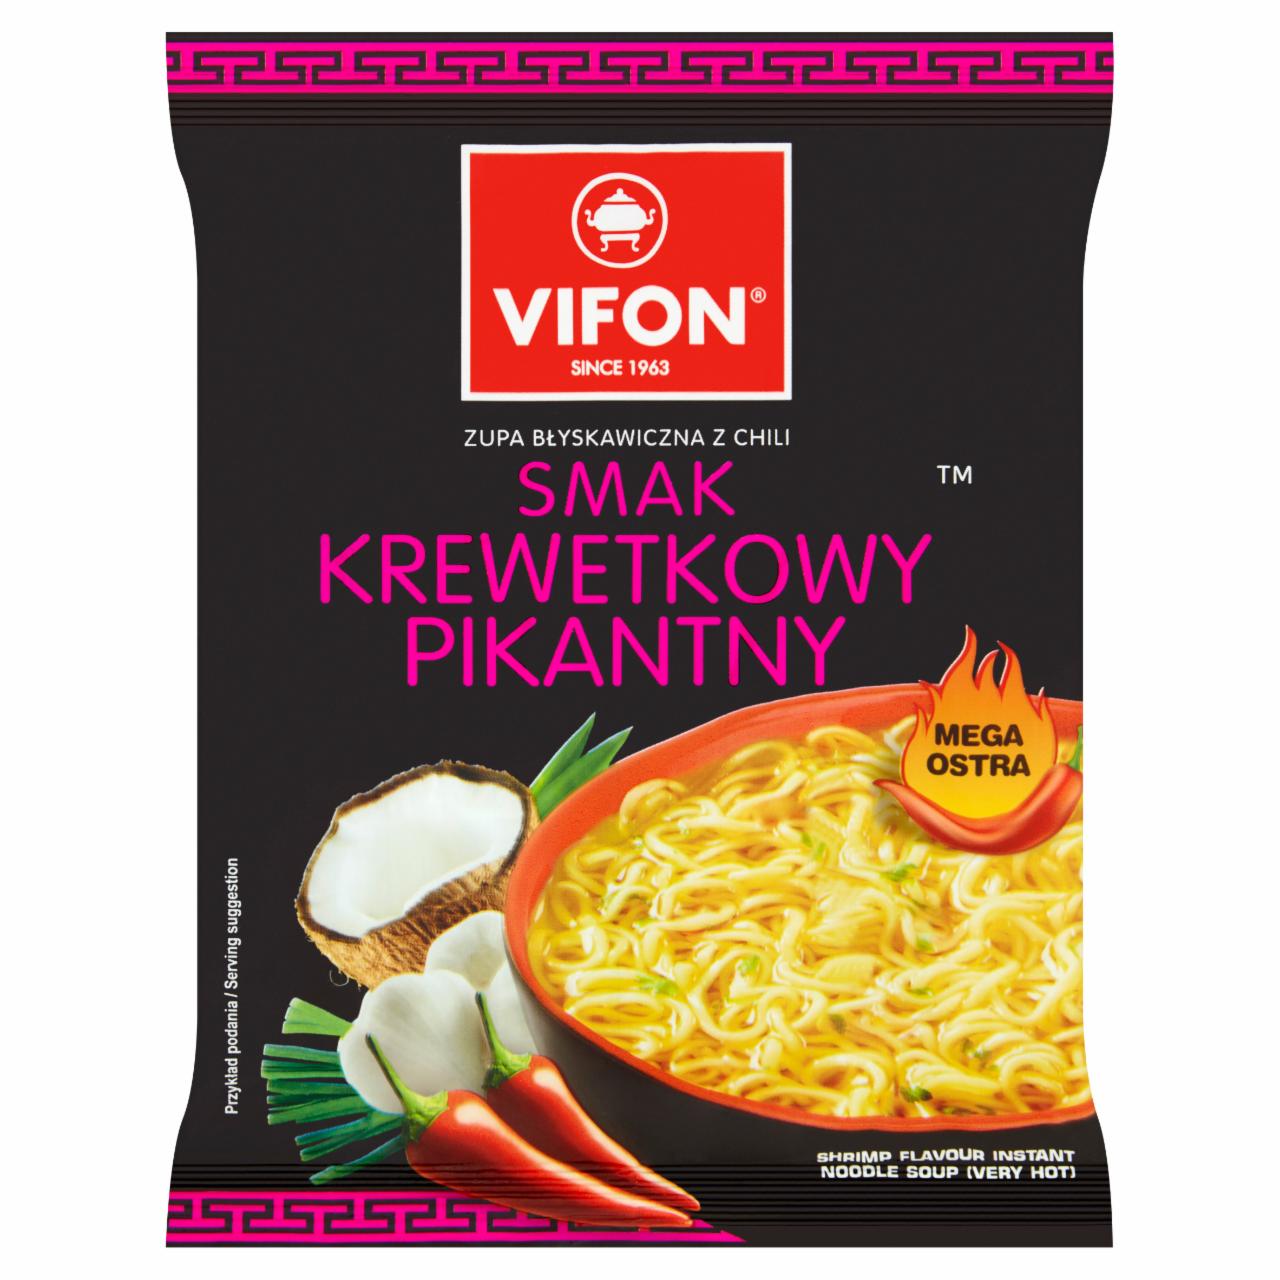 Képek - Kókuszos-garnélarákos ízesítésű instant tésztás leves Vifon